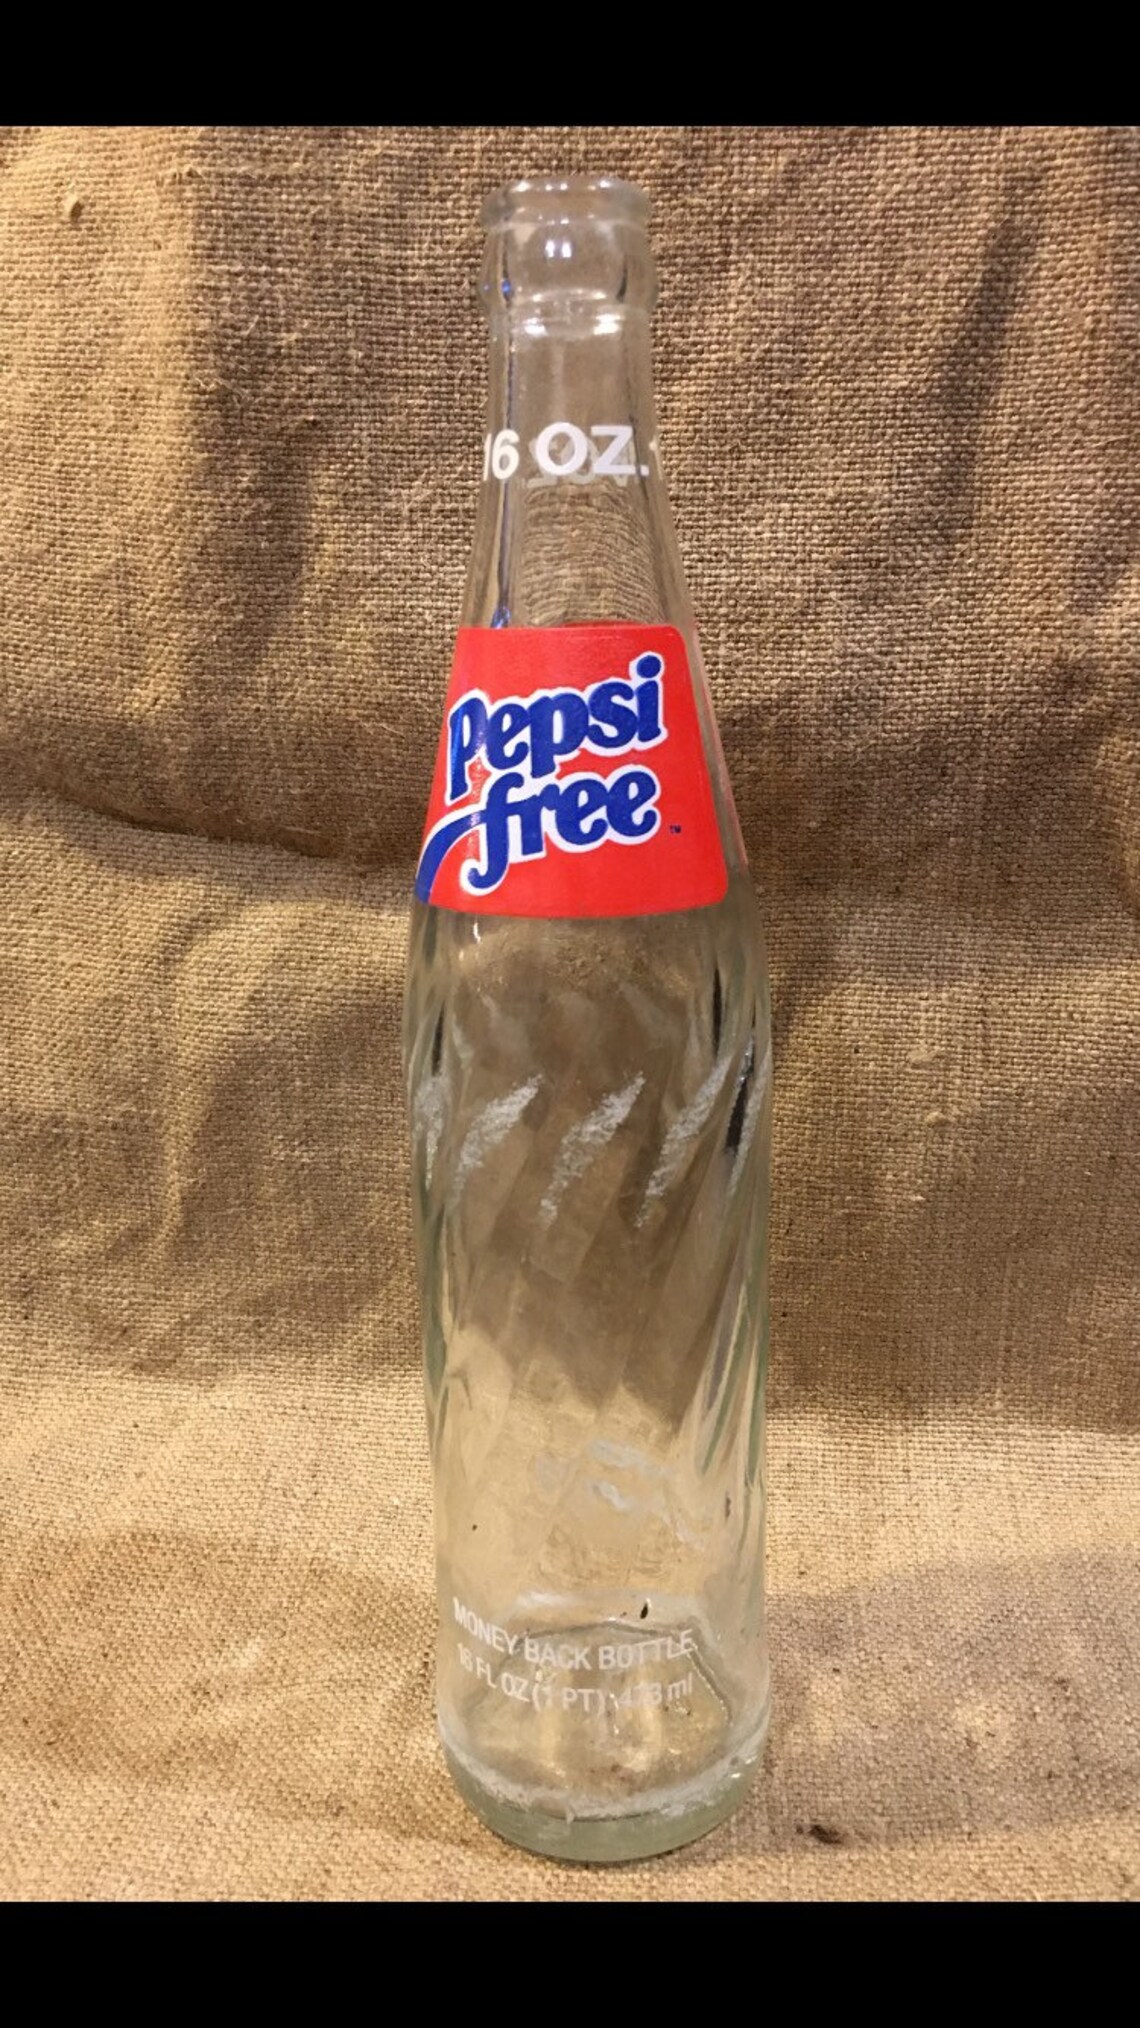 1982 Pepsi Free Bottle | Etsy